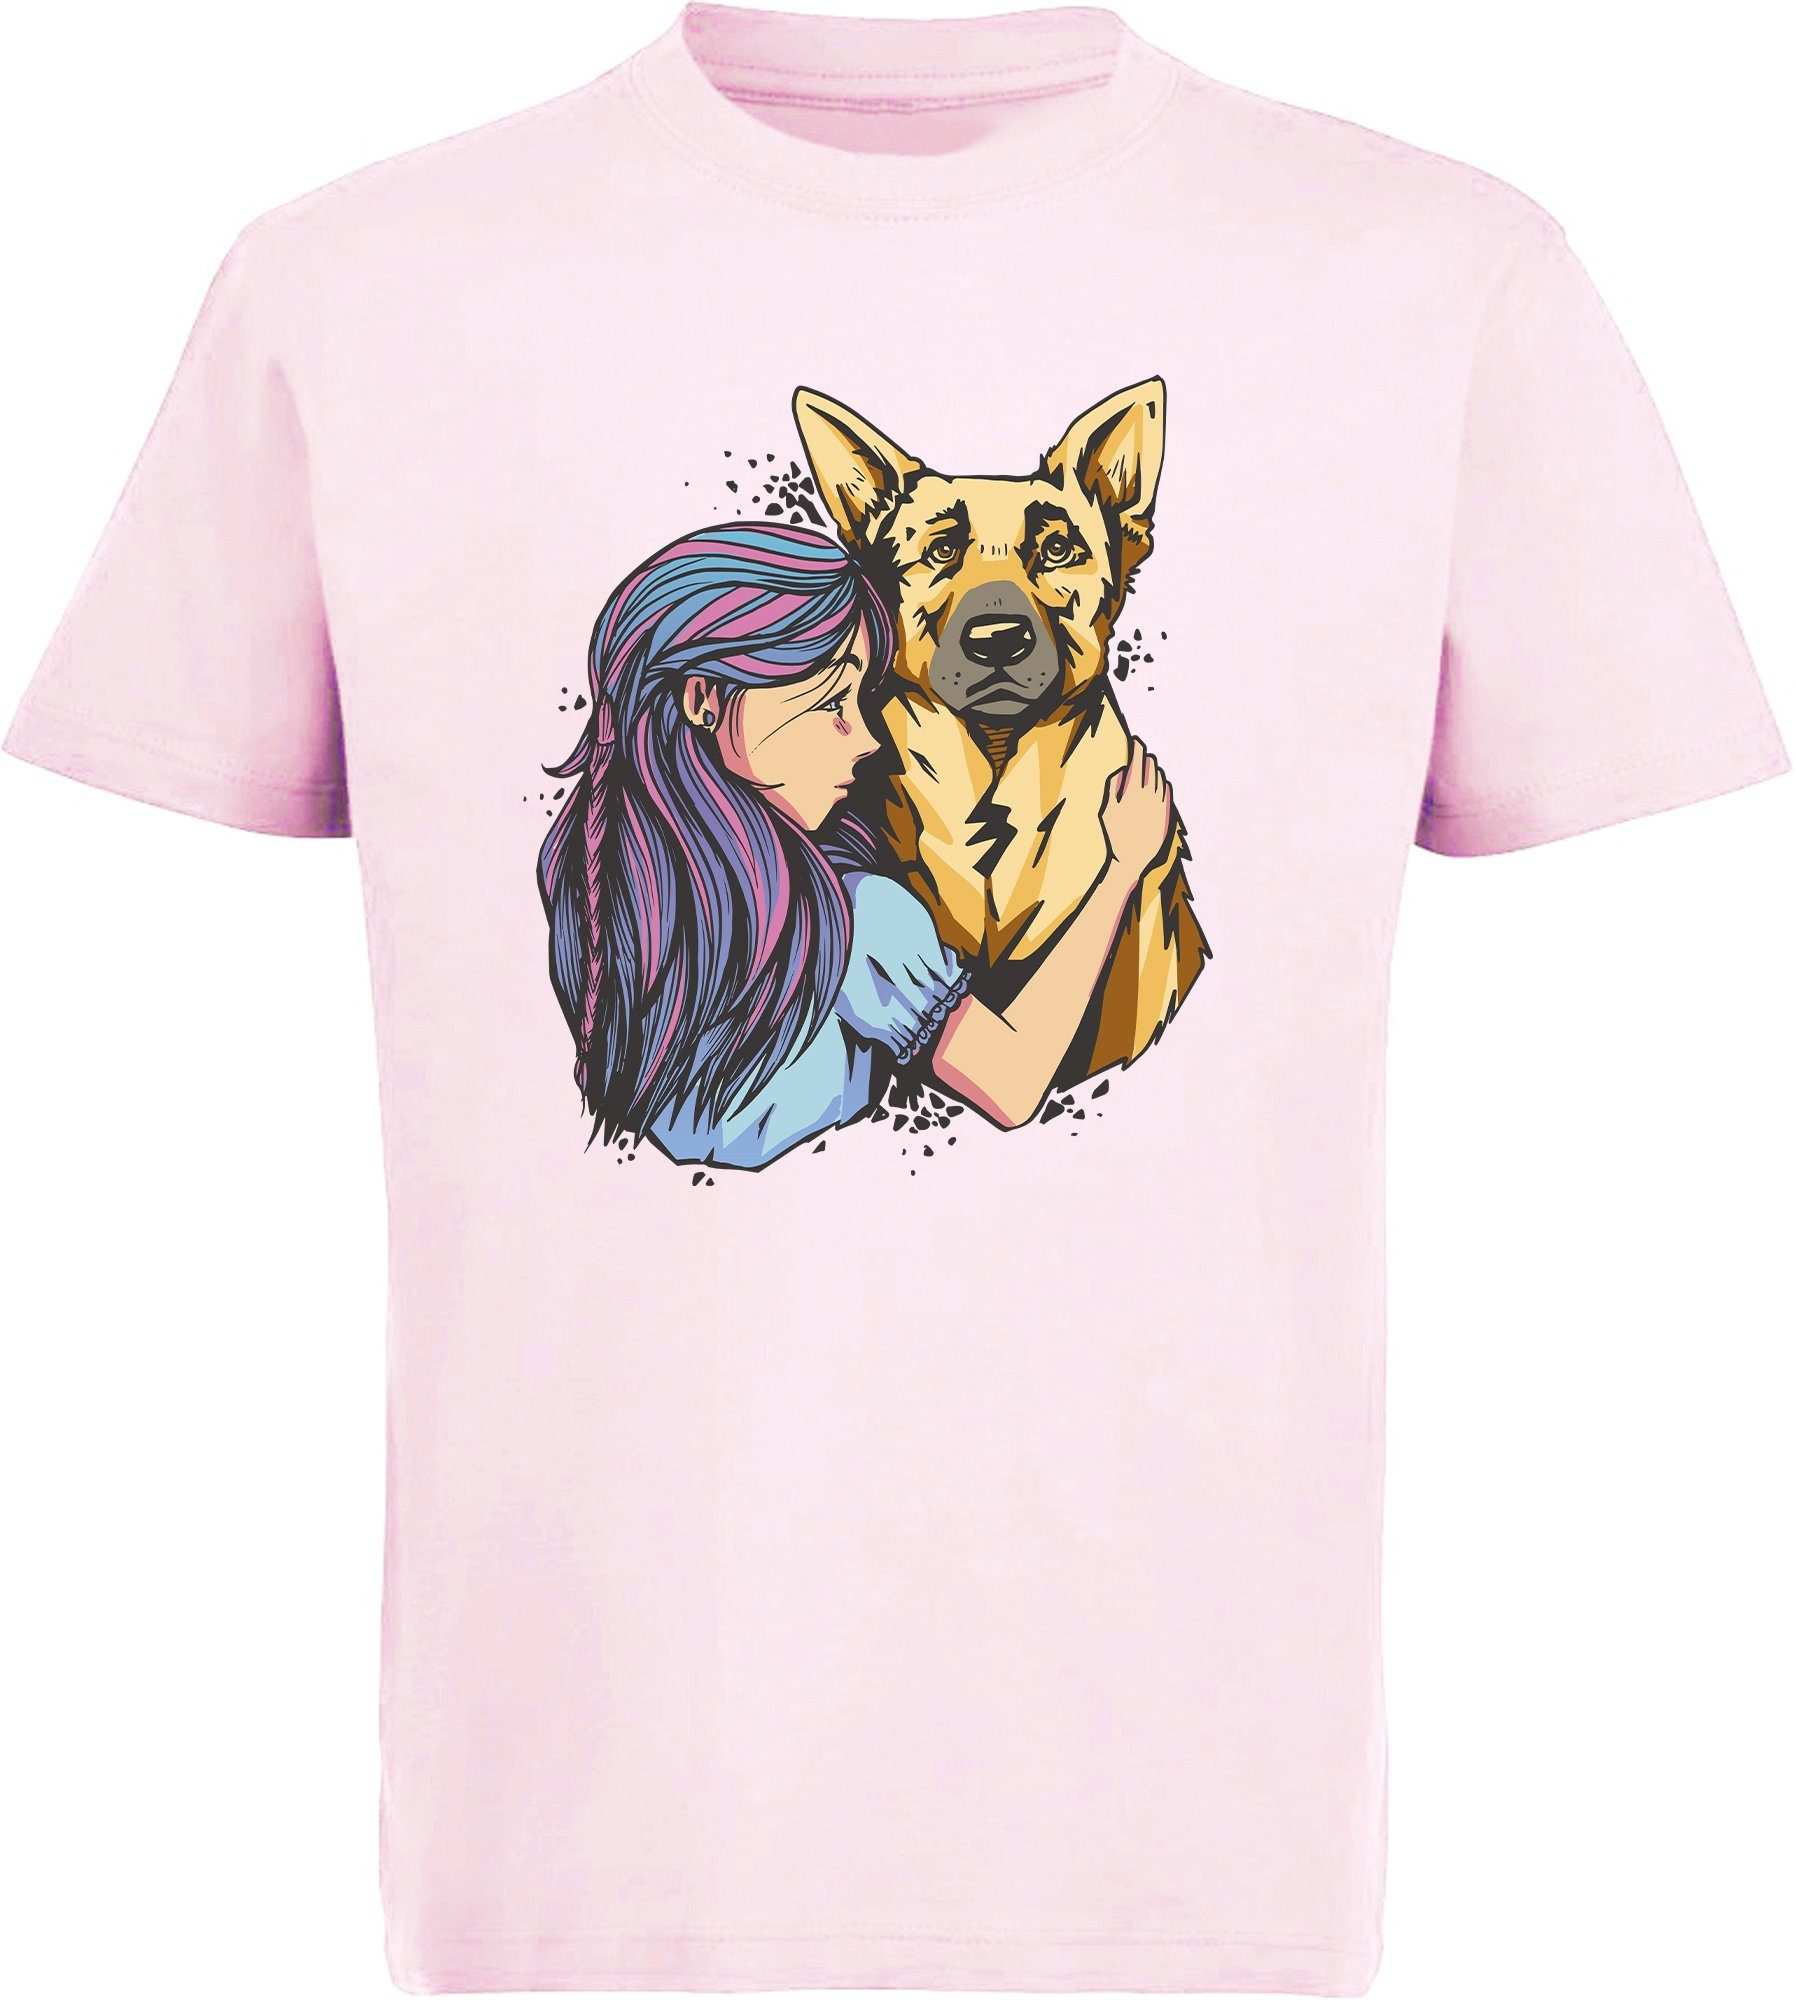 MyDesign24 T-Shirt Kinder Hunde Print Shirt bedruckt - Schäferhund mit Mädchen Baumwollshirt mit Aufdruck, i258 rosa